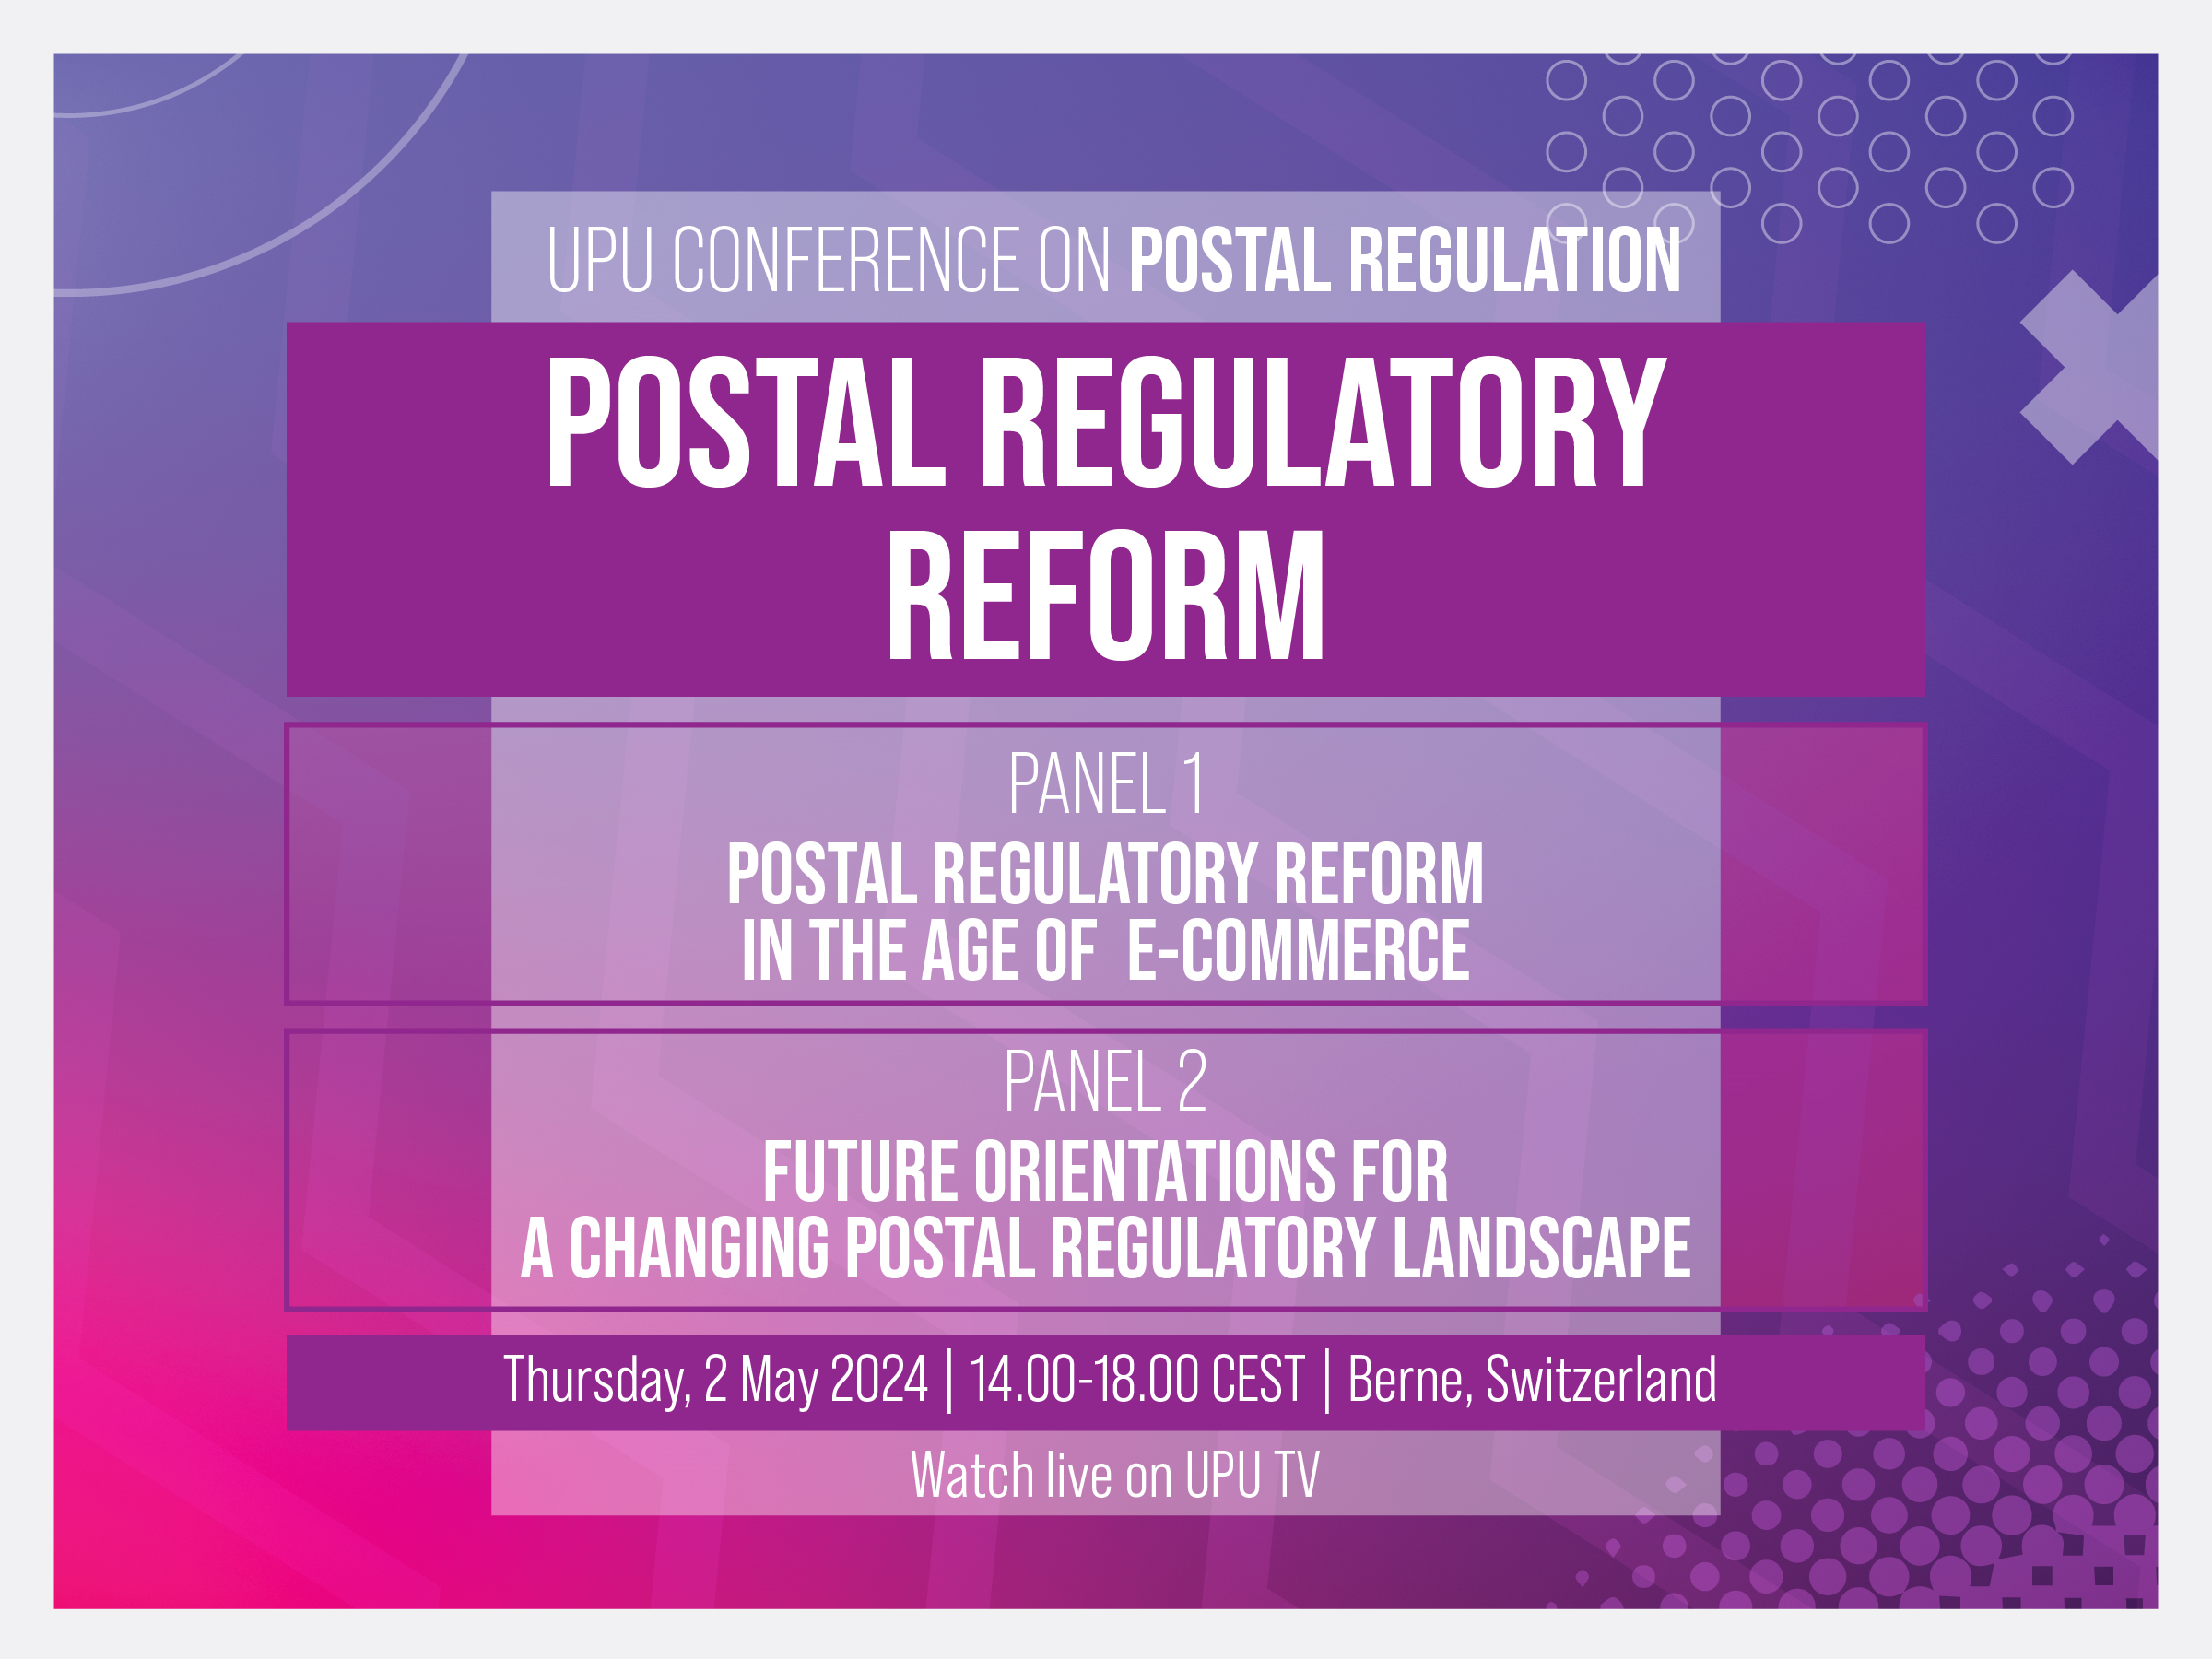 Conference on Postal Regulation